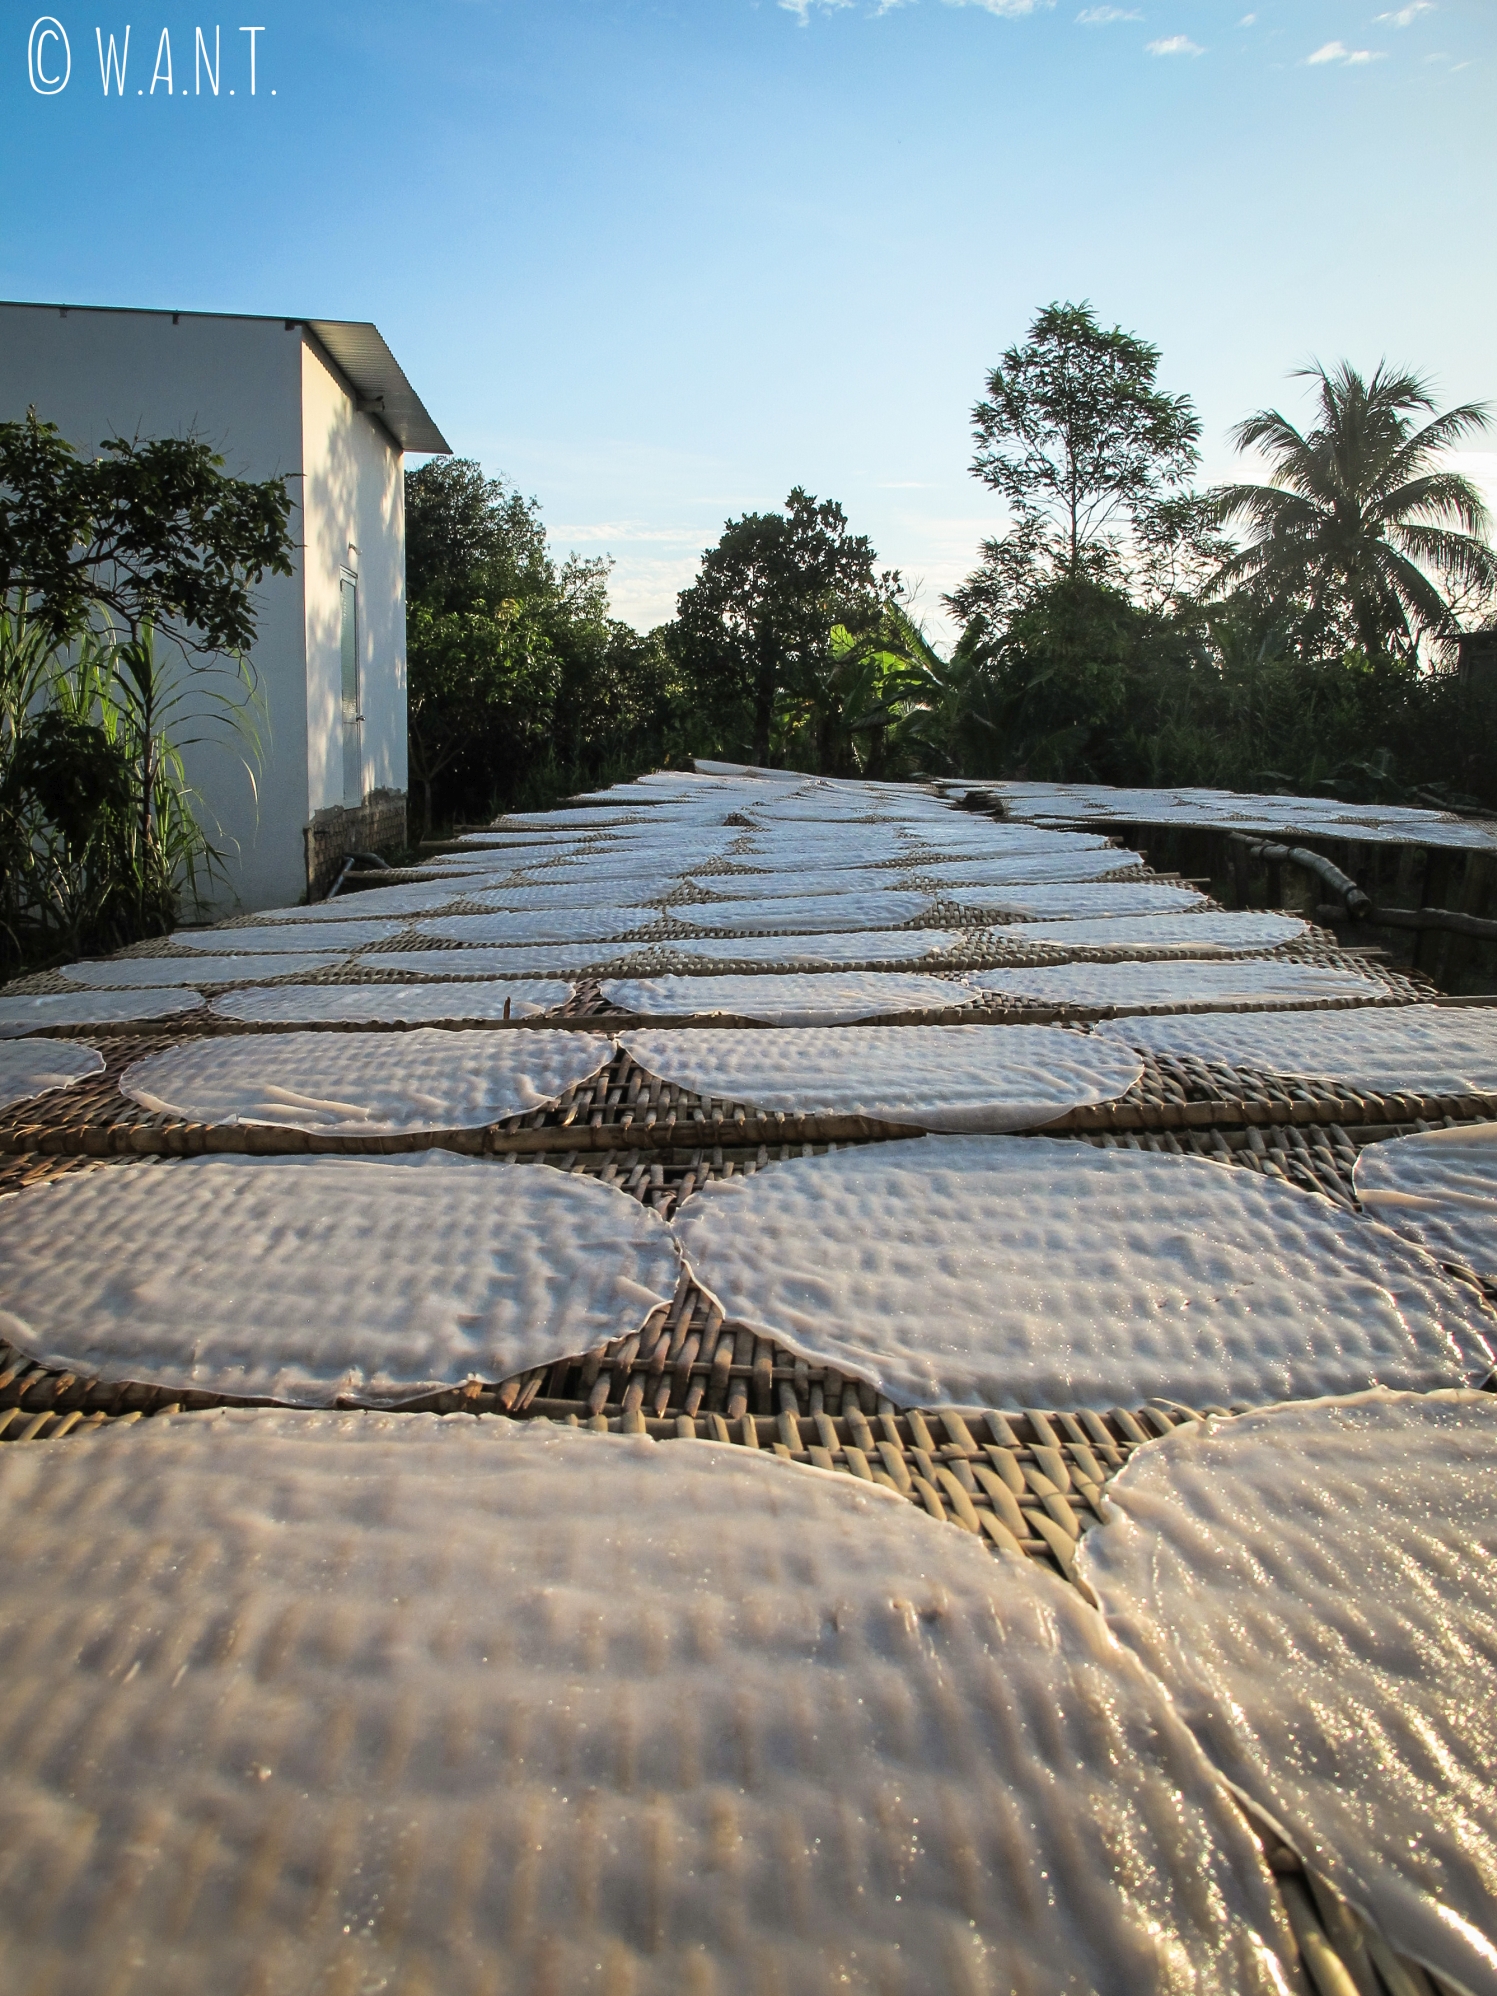 Les galettes de riz sont mises à sécher au soleil dans le delta du Mékong